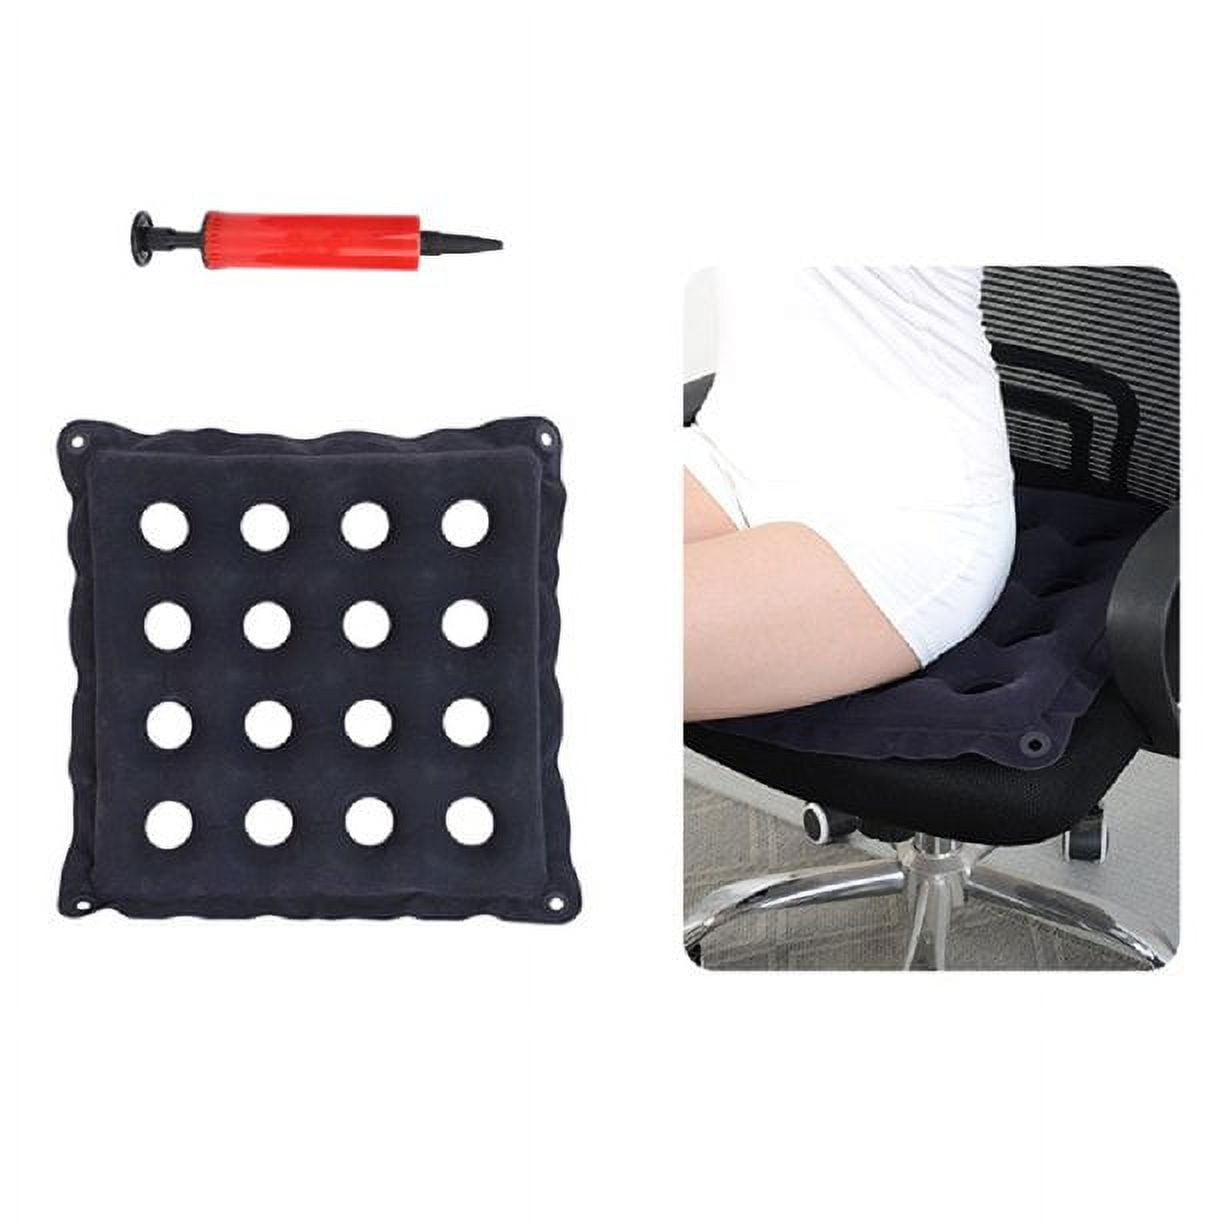 Pressure Cushions for Bottoms Pressure Sores, Wheel Chair Air Cushion  Inflatable Seat Mattress Anti Bedsore Prevent Decubitus Wheelchair Cushions  for